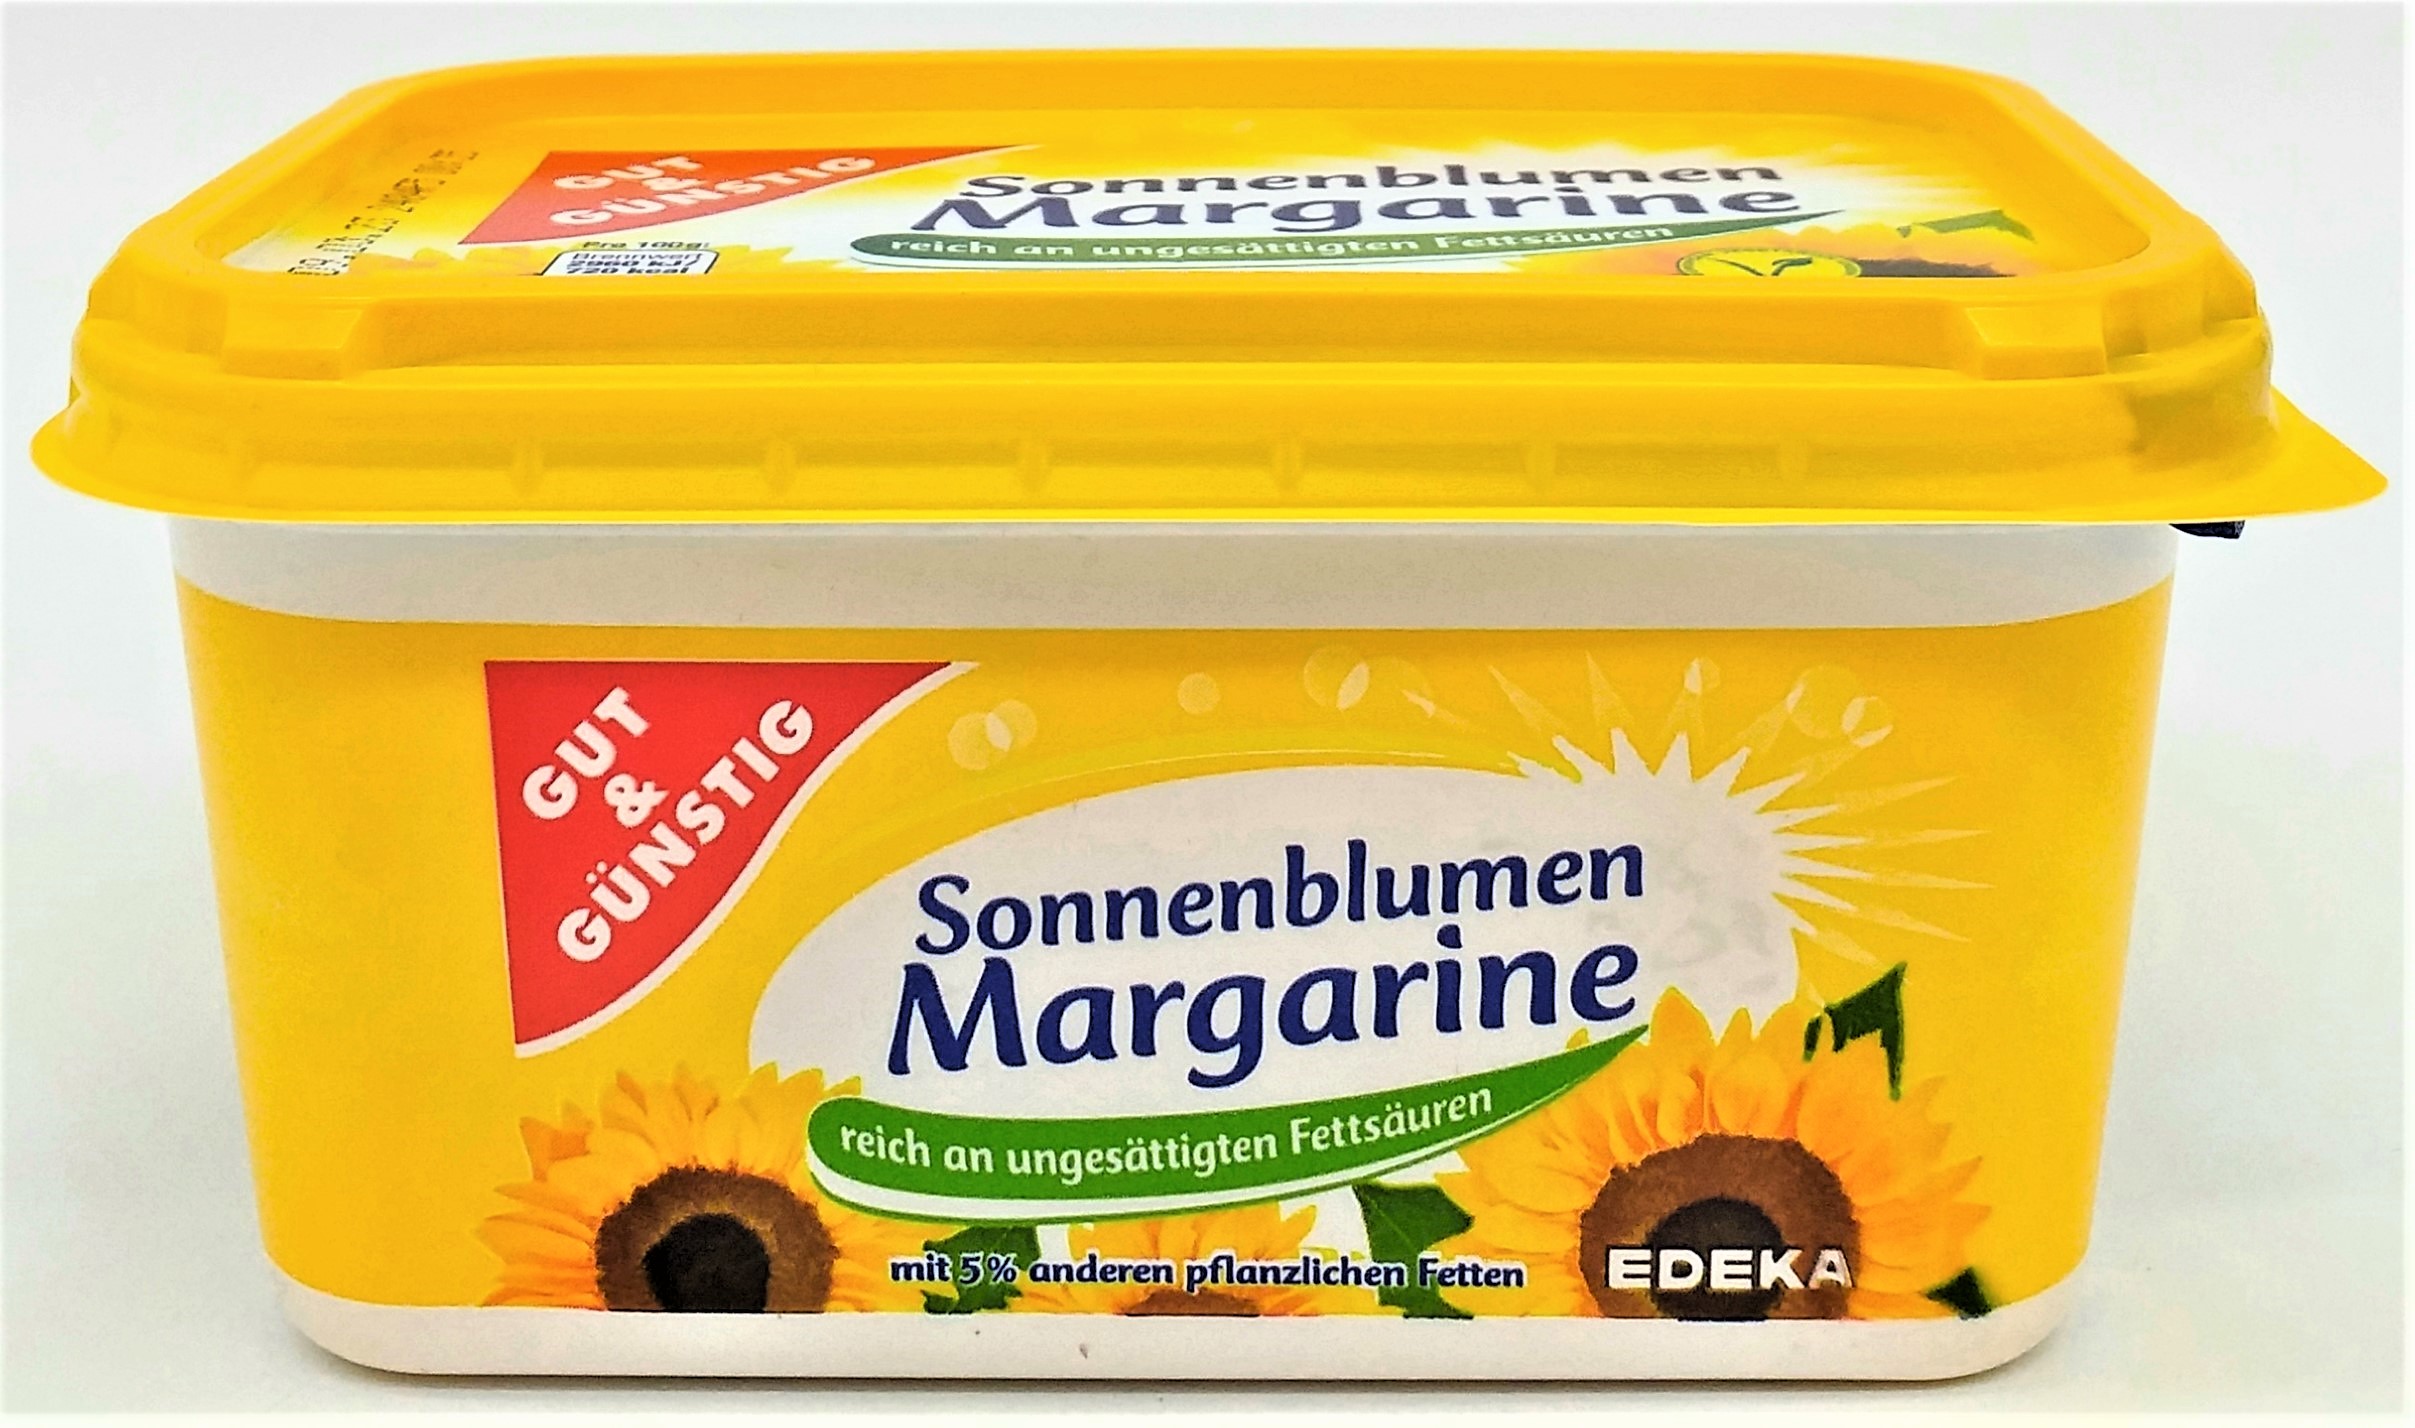 G&G Sonnenblumenmargarine 500g